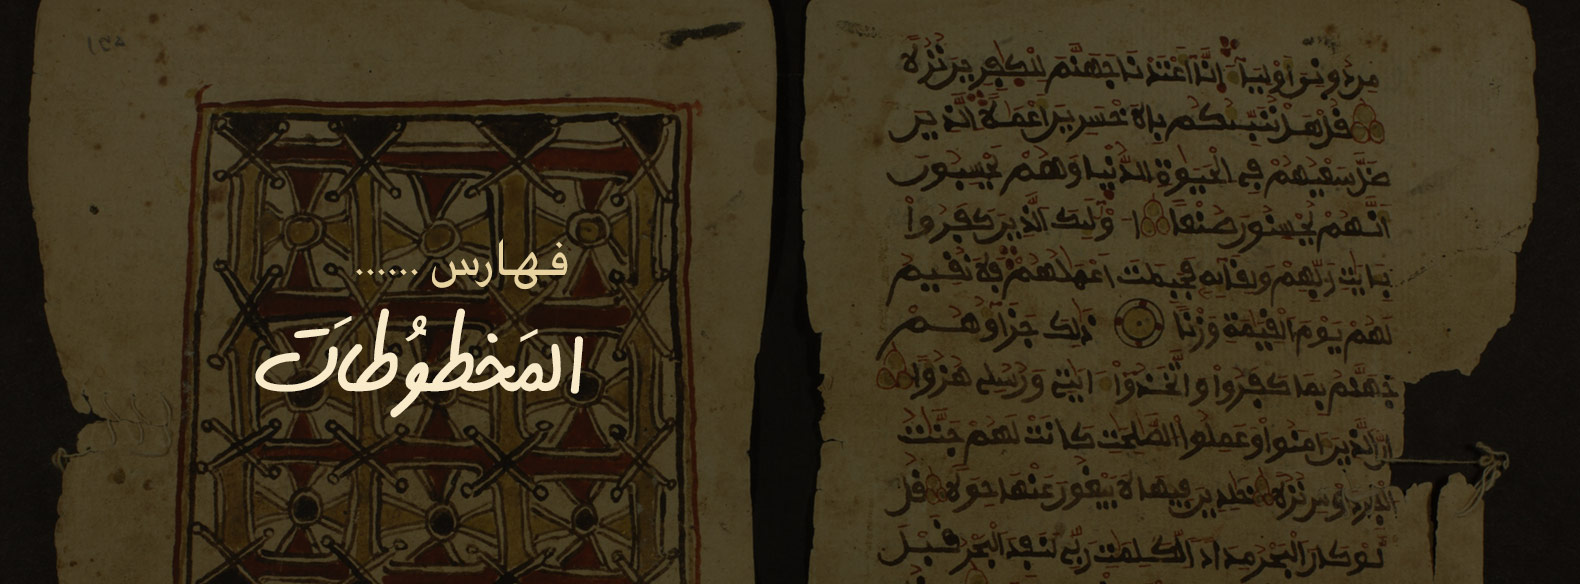 معجم المخطوطات المفهرسة في المكتبات حول العالم